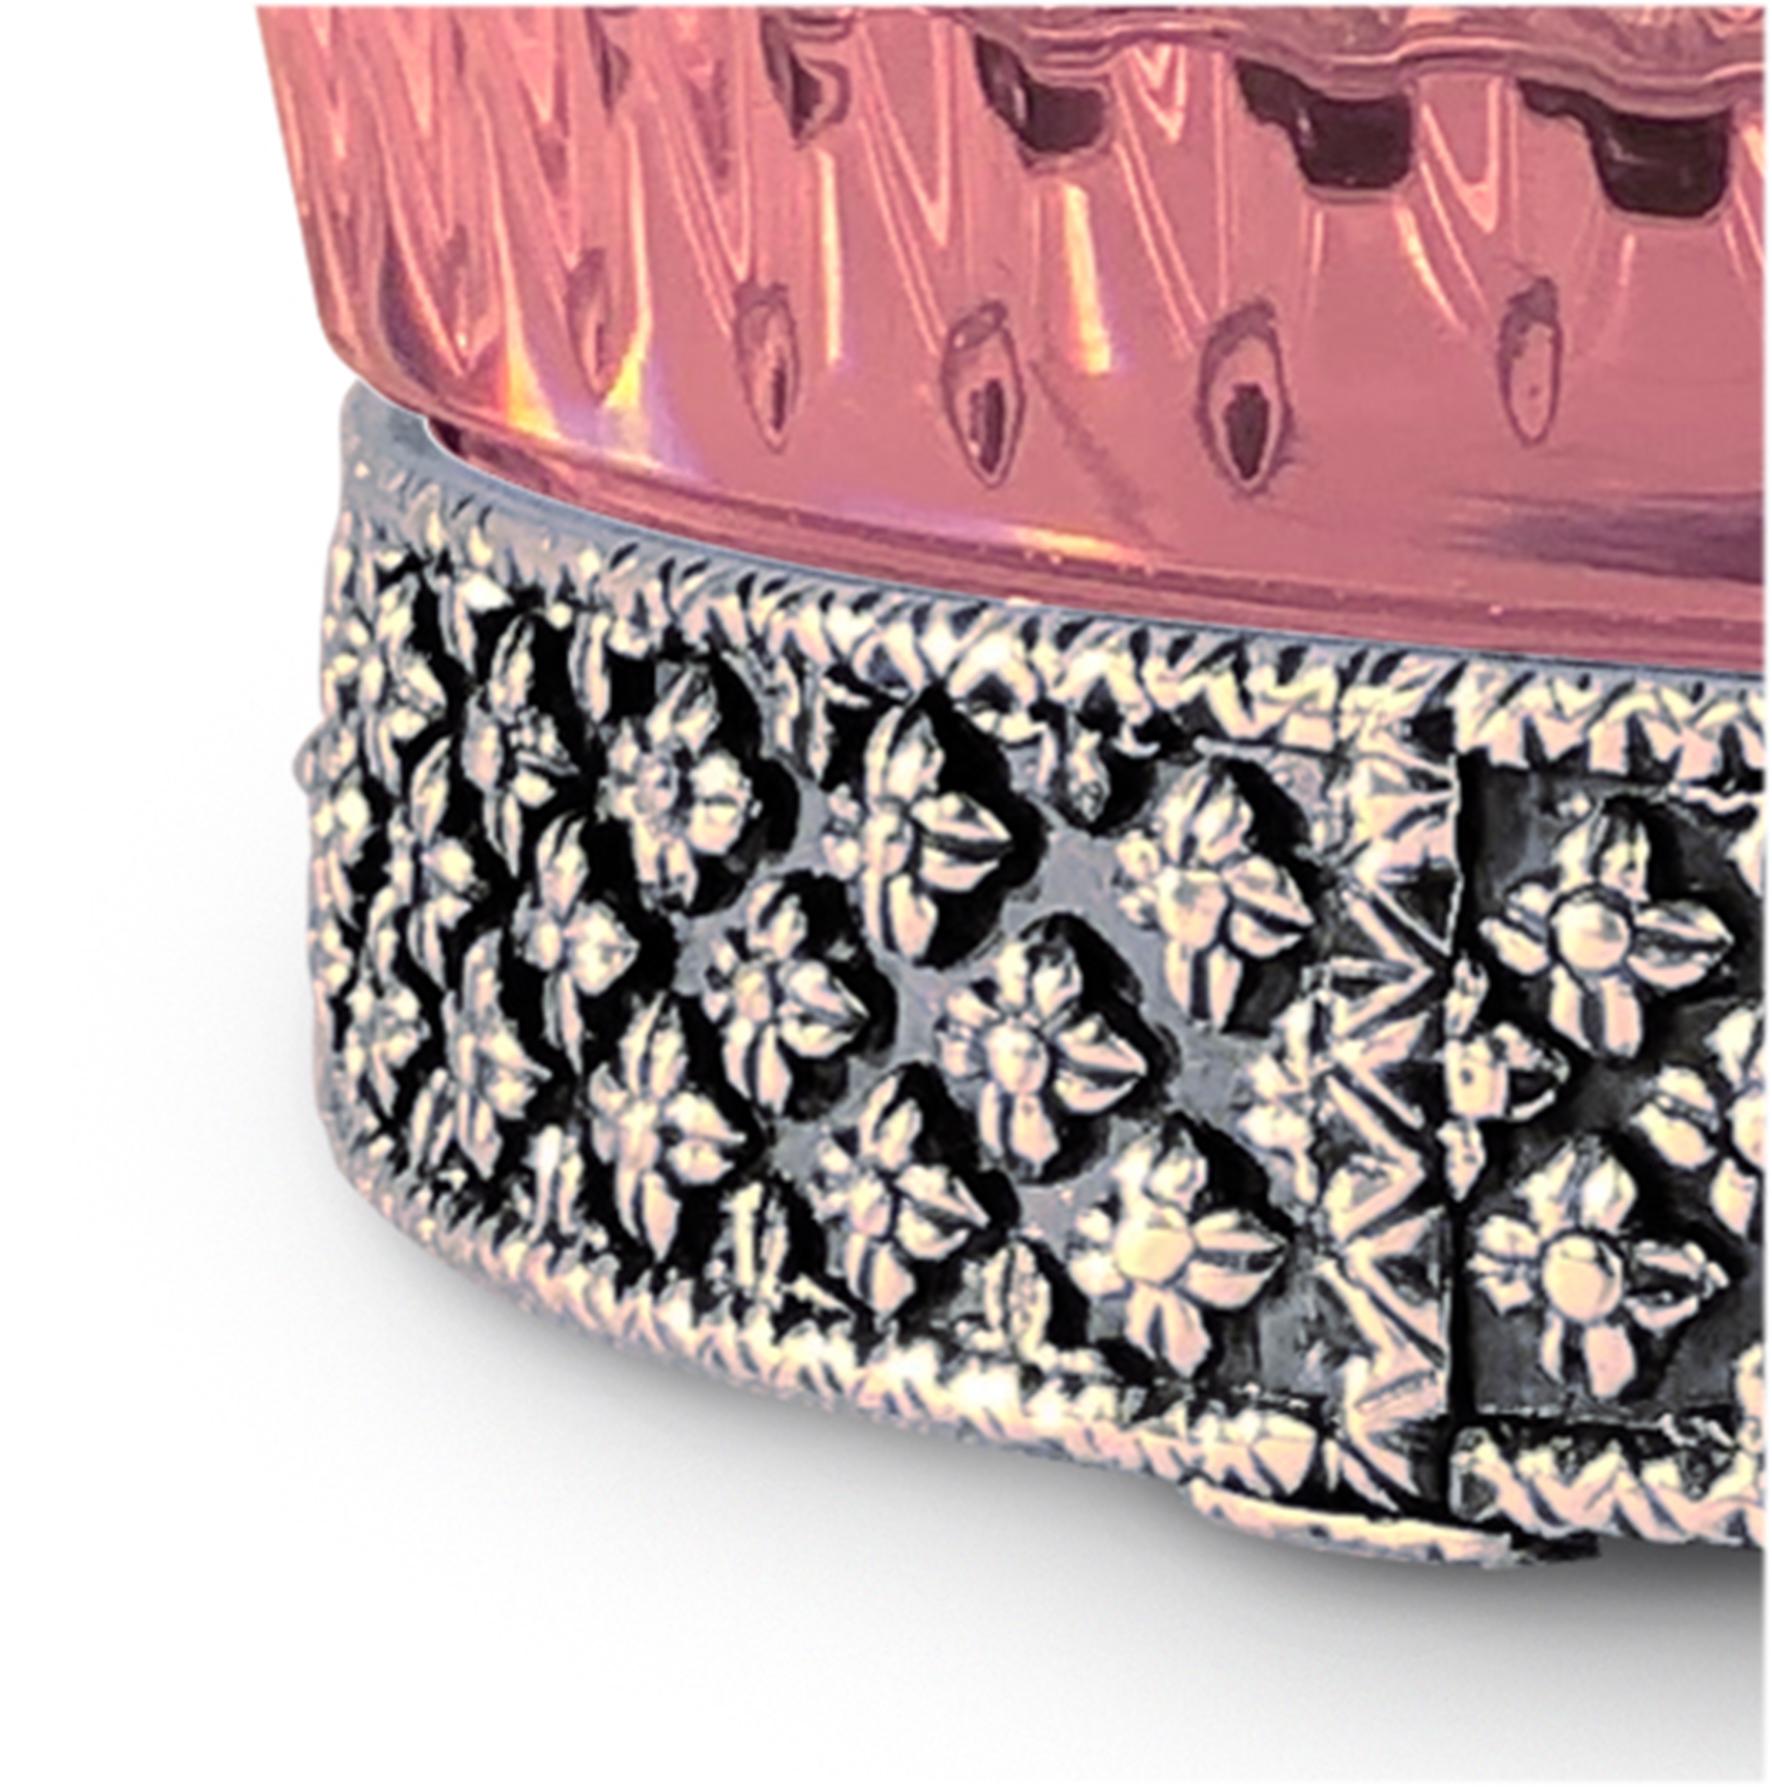 Boîte en cristal rose et bleu clair avec des gravures taillées agrémentées de détails en laiton, réalisée selon la technique artisanale de la cire perdue avec une finition en argent patiné. Chaque objet est fabriqué à la main et le soin apporté à